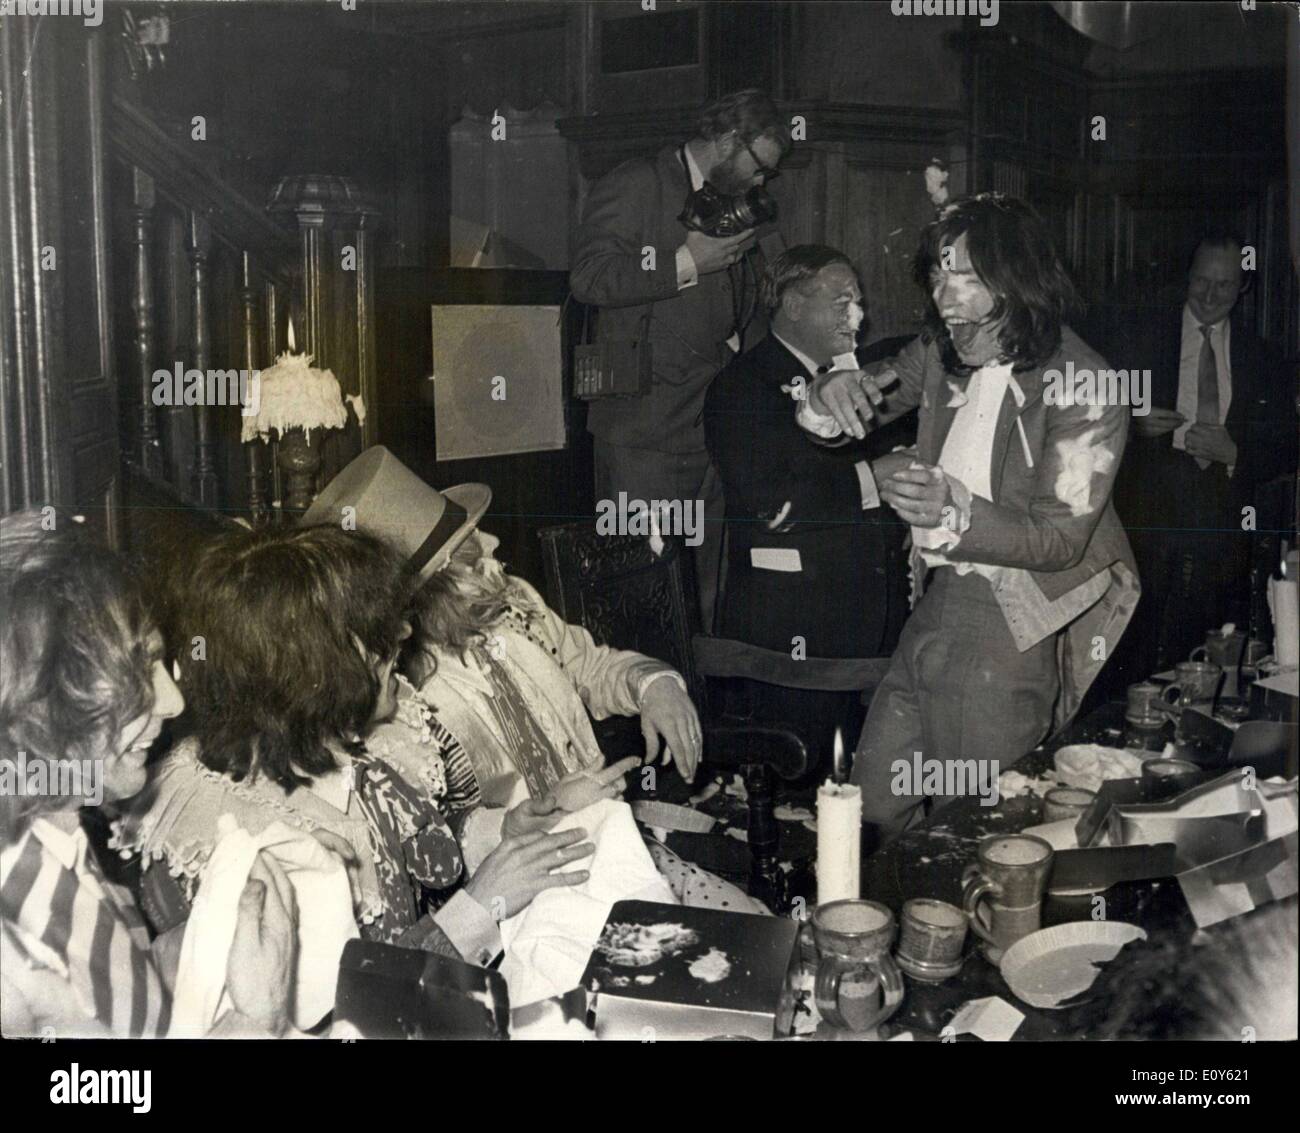 05 déc., 1968 - Tarte à la crème des Beggars Banquet donné par les Rolling Stones. Les Rolling Stones a tenu aujourd'hui un p572, avec dessert, etc., pour partouze dont un certain nombre de journalistes de la télévision, d'amis folk et al, ont été invités, à l'époque élisabéthaine, chambre hôtel Queensgate, Gore, le banquet a été arrondi avec une crème anglaise pie bataille. Photo montre : Rolling Stone Mick Jagger, sur la droite, de s'amuser pendant la custard pie jeter aujourd'hui. Banque D'Images